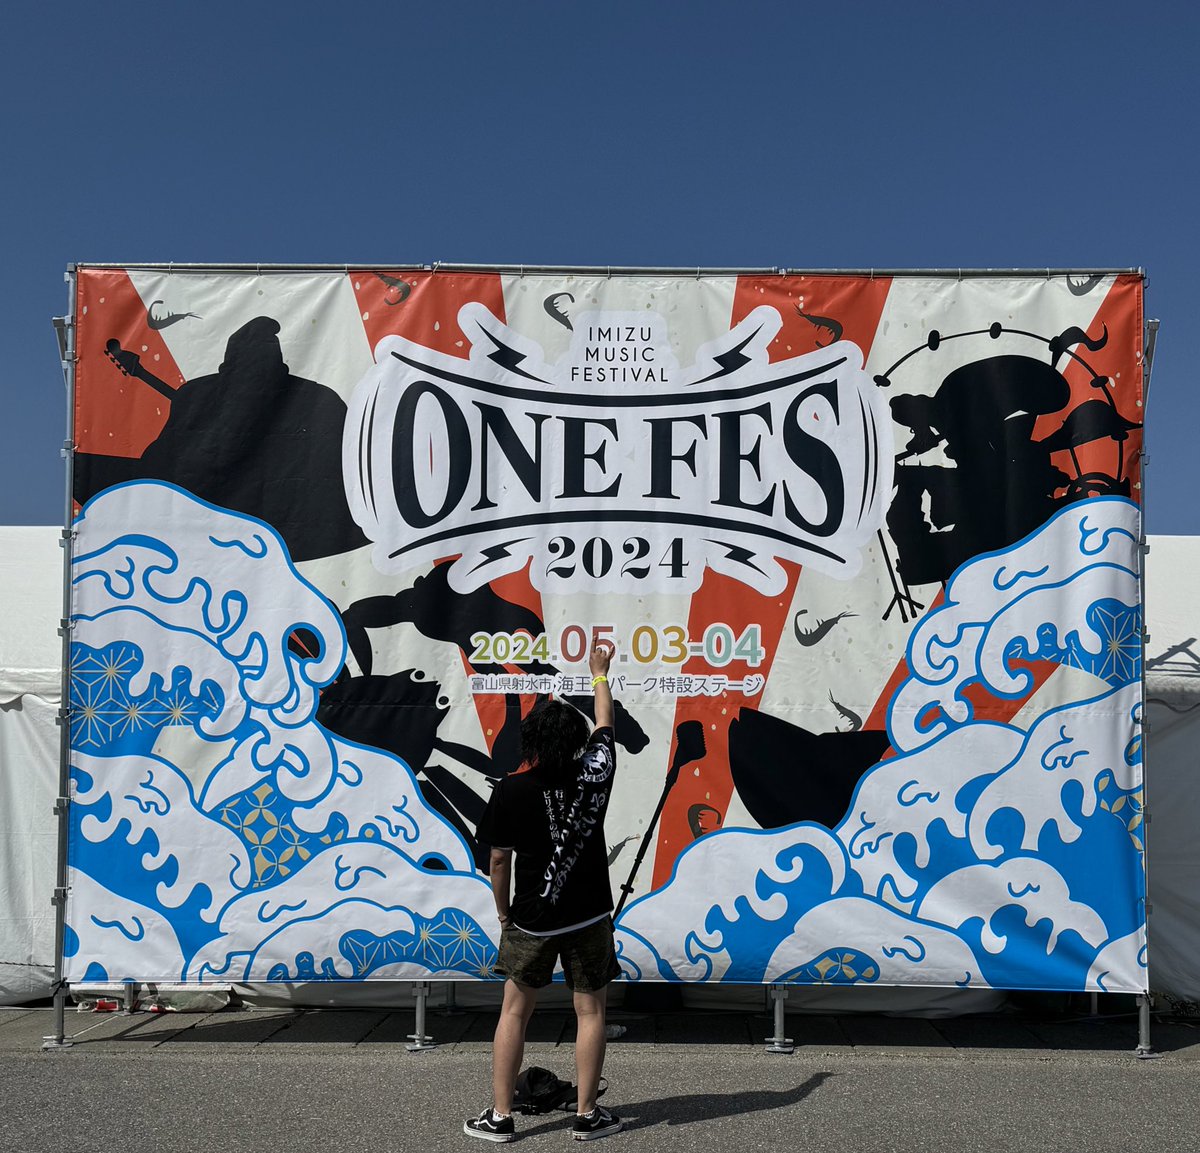 今日はラストまで楽しみます！
#ONEFES 
#ONEFES2024